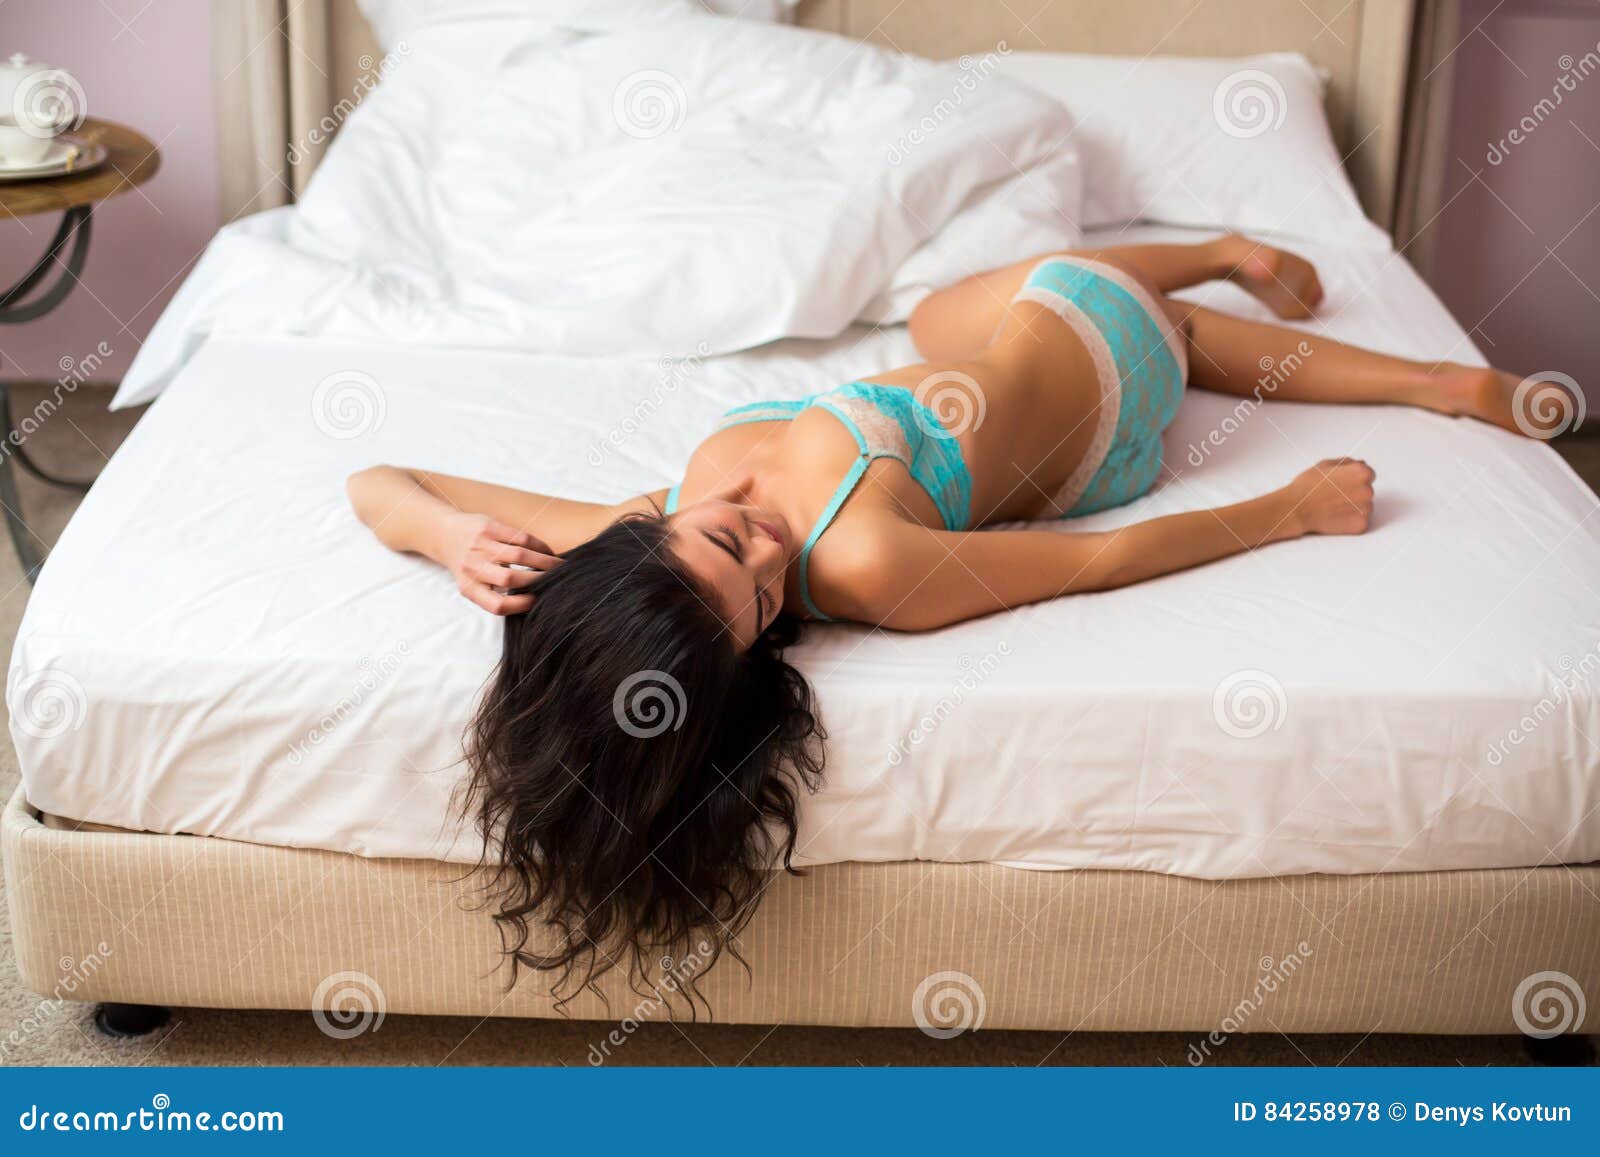 Бедра в постели. Девушка развалилась на кровати. Девушка с длинными волосами в постели. Бедра лежа на кровати. Женская спина лежа в постели.